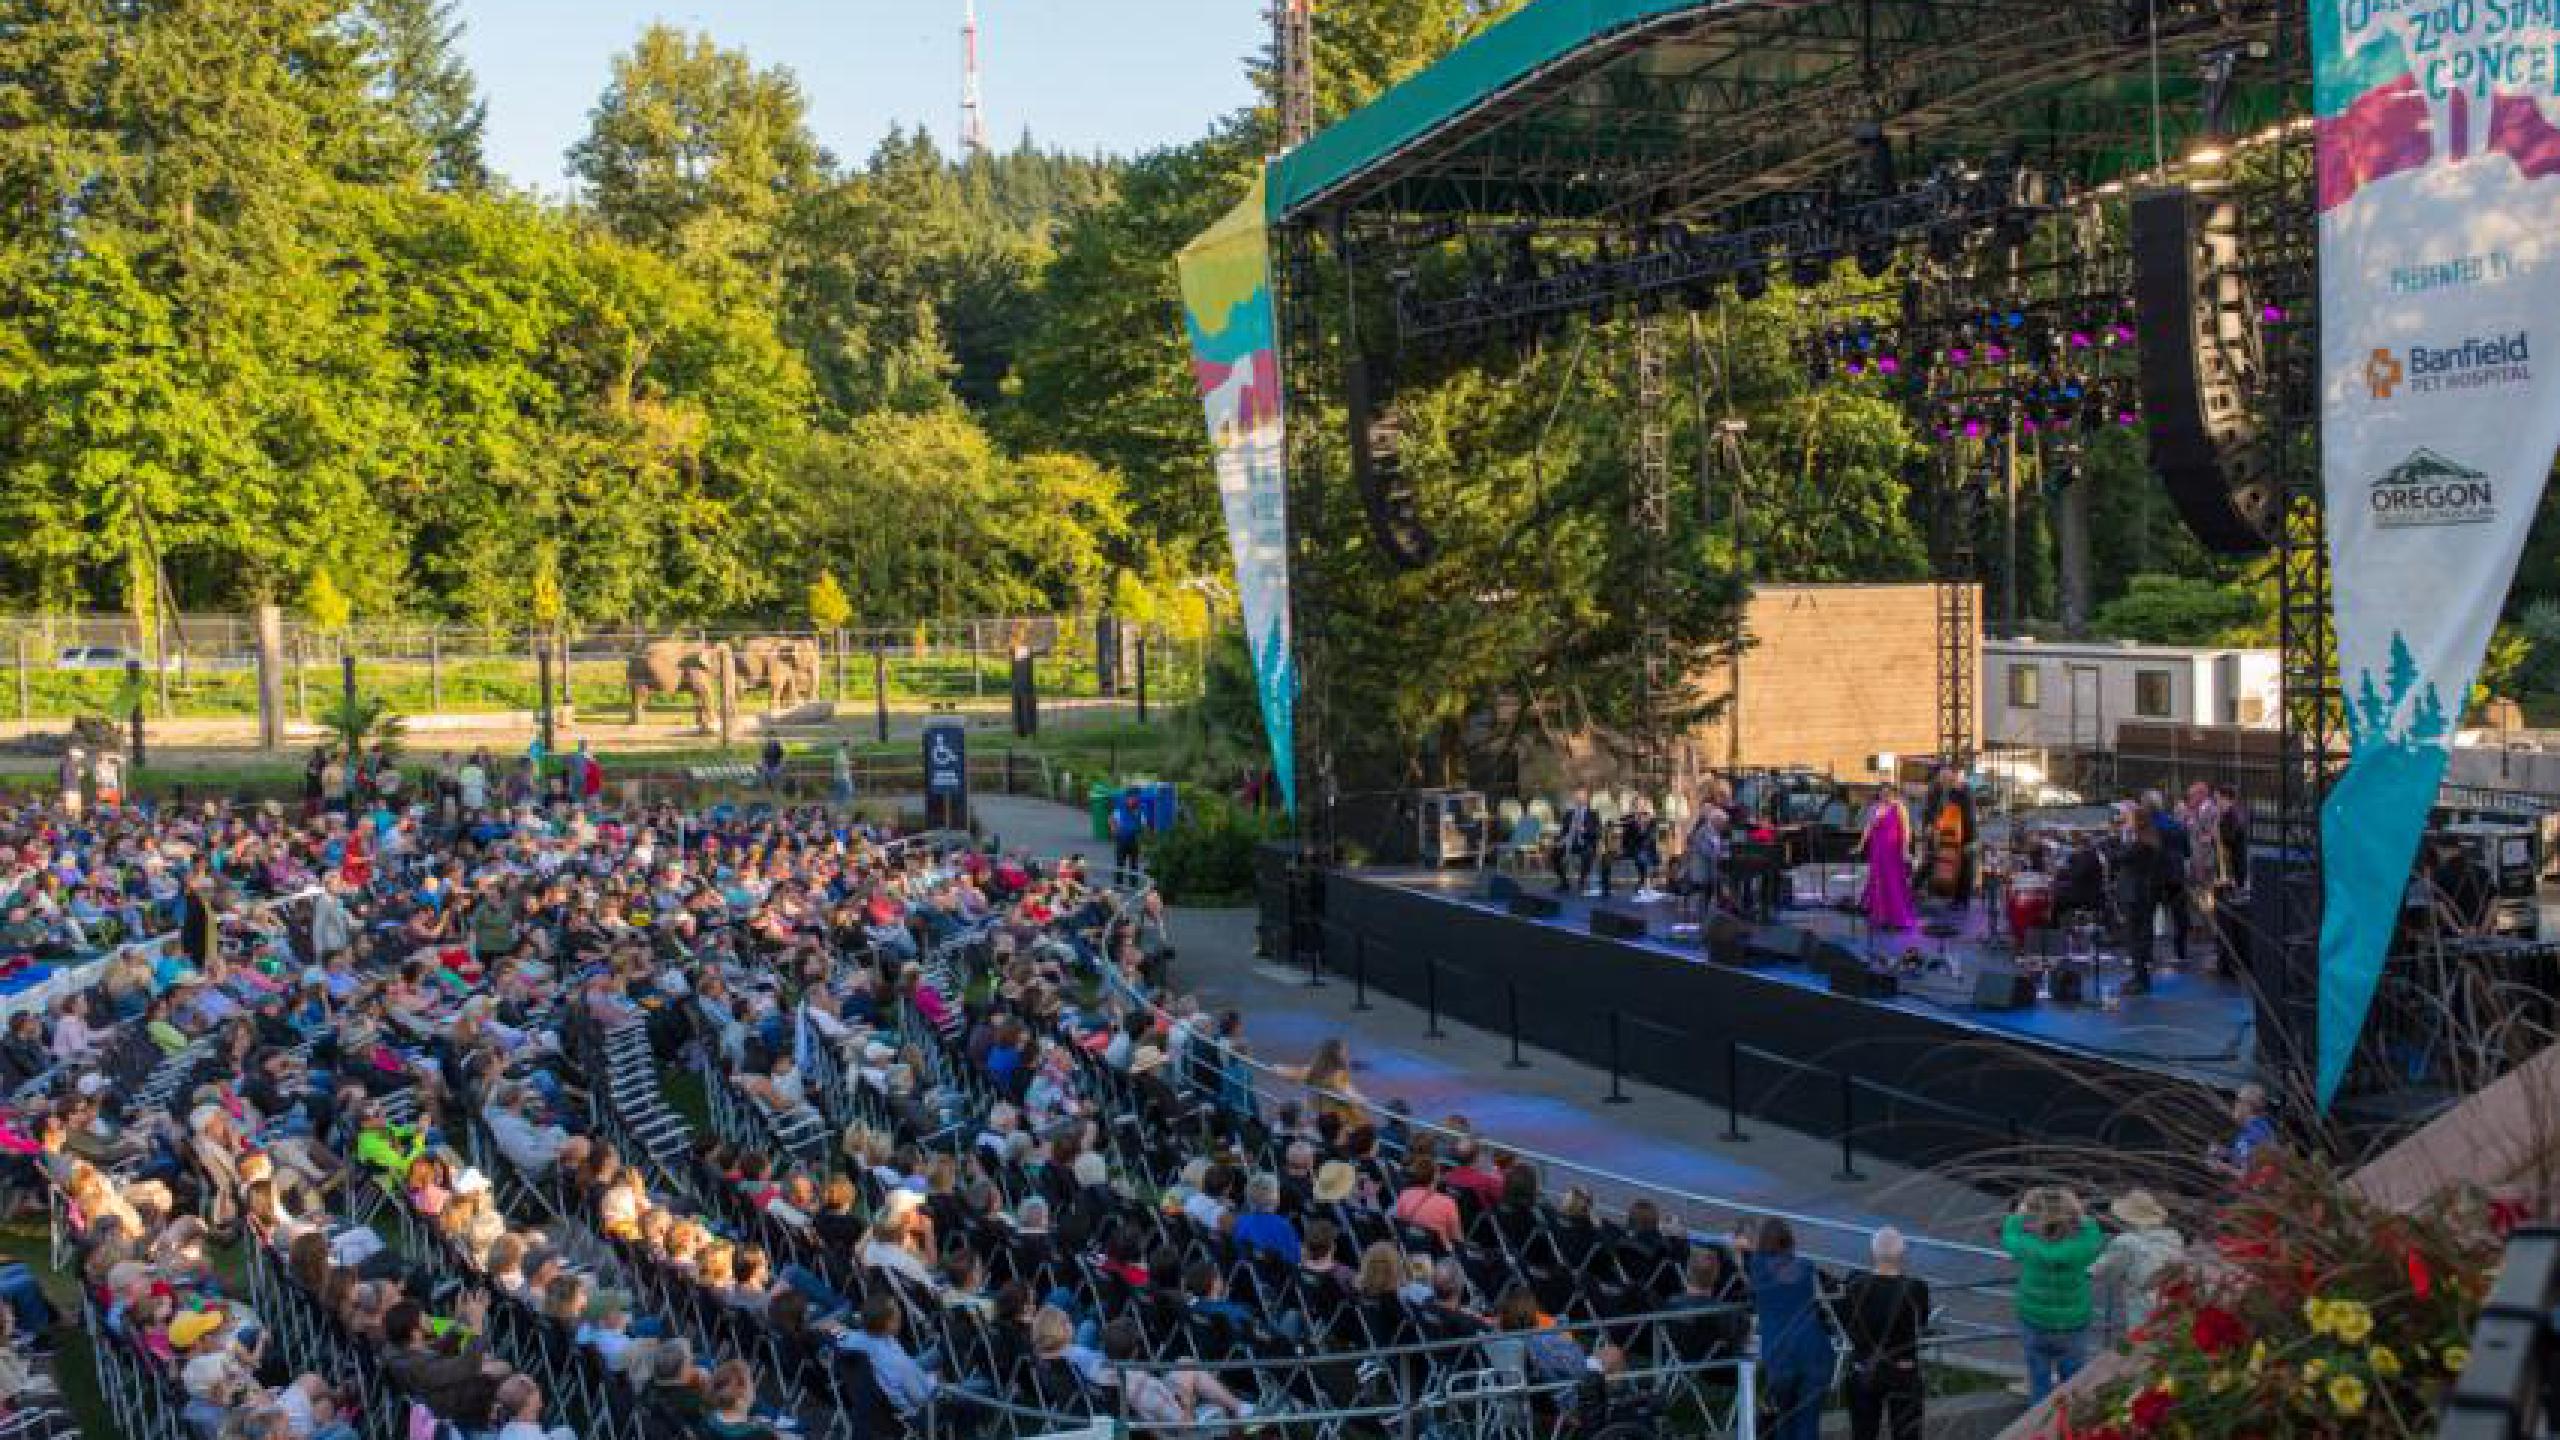 Oregon Zoo Amphitheater entradas y conciertos 2022 2023 Wegow